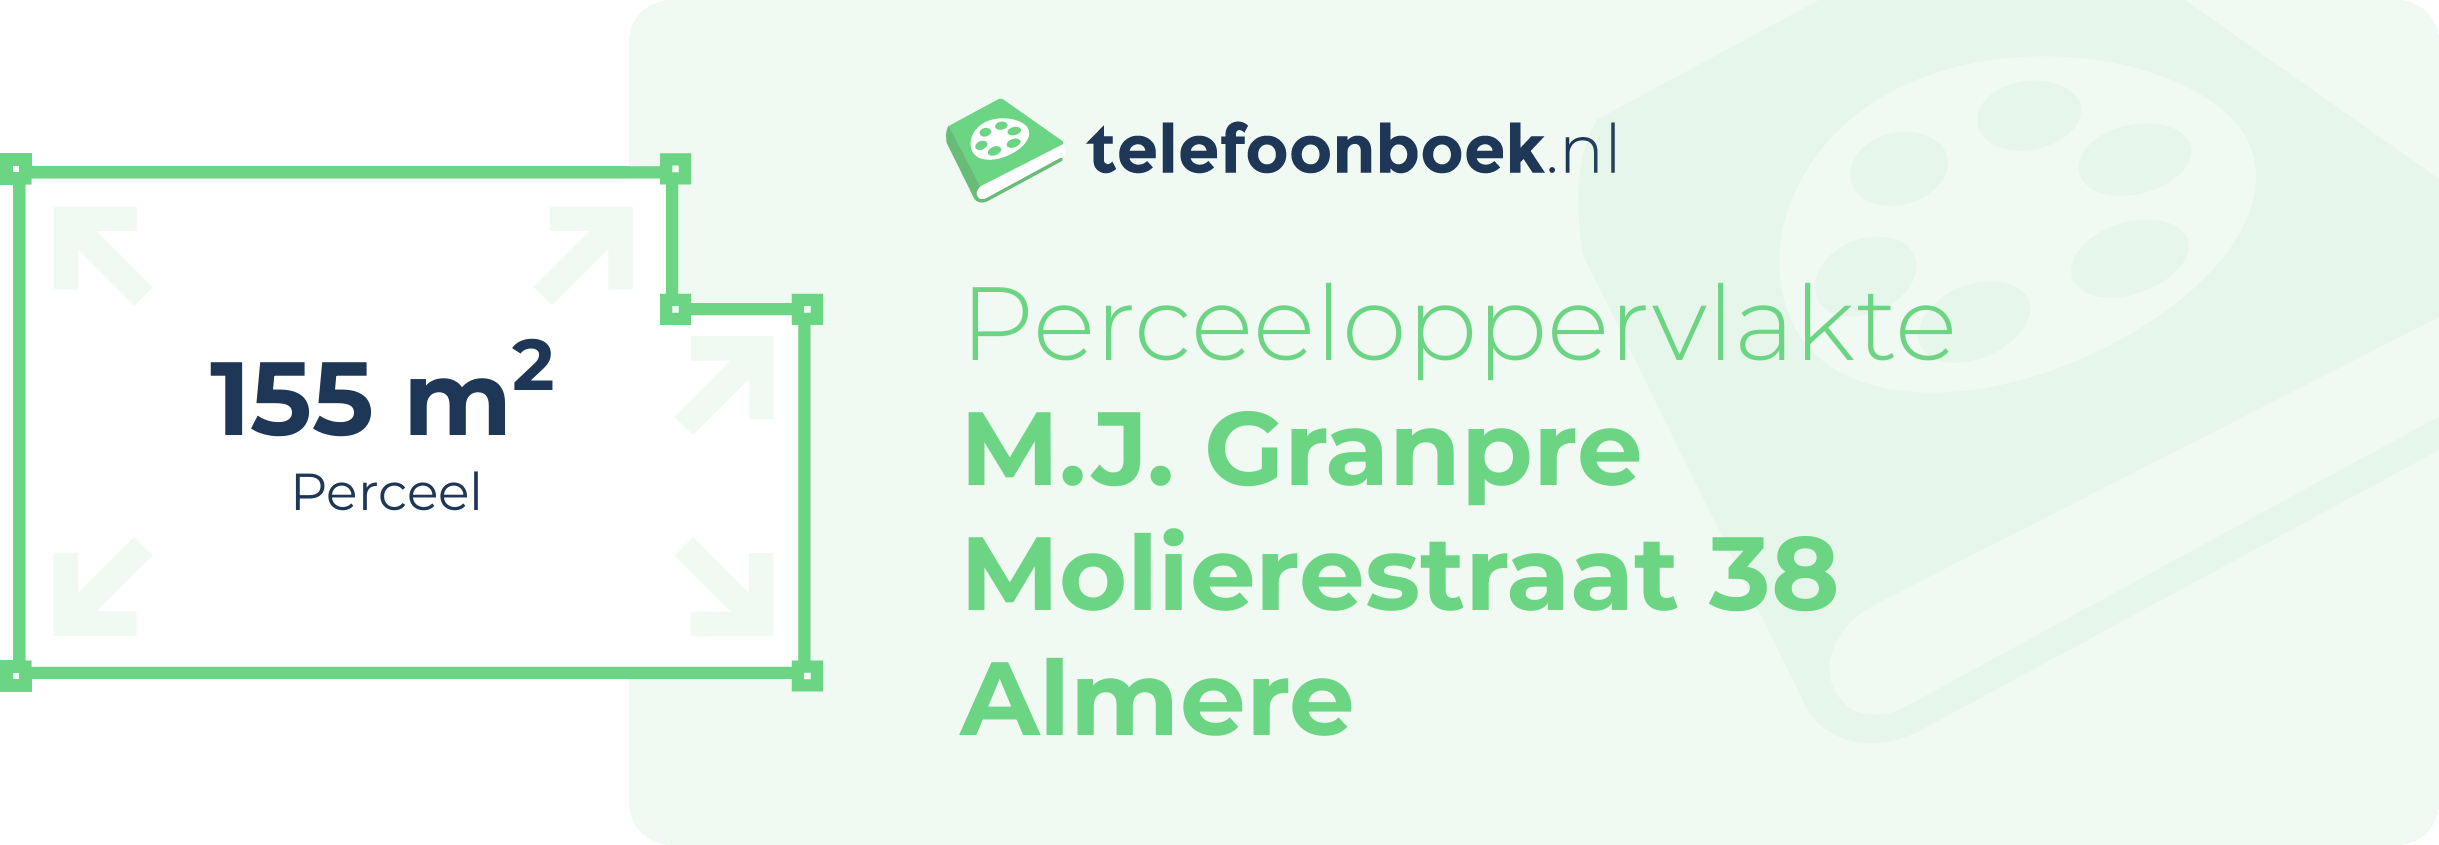 Perceeloppervlakte M.J. Granpre Molierestraat 38 Almere